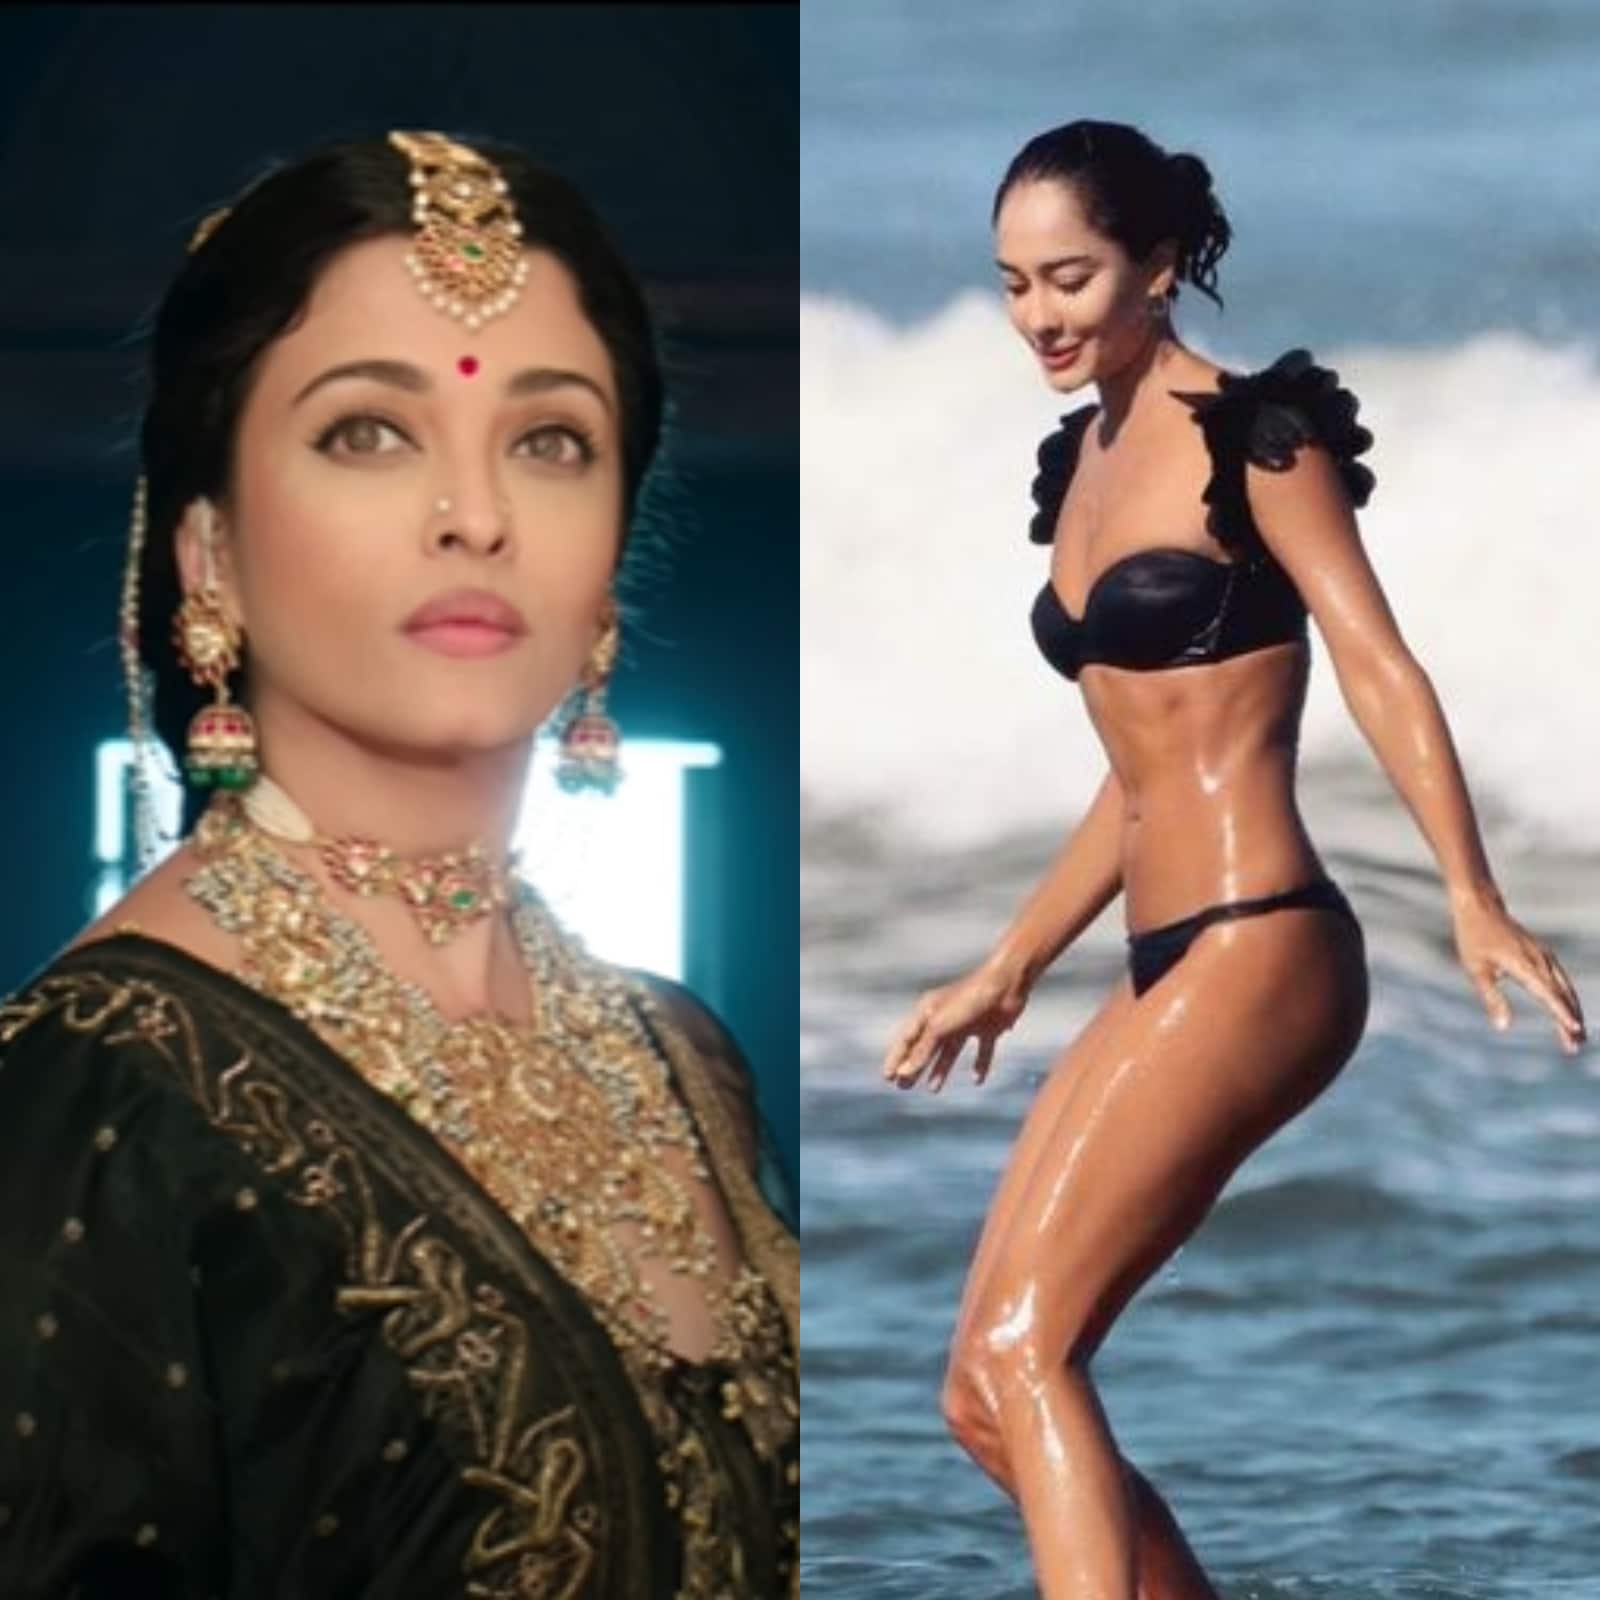 Bikini Aishwarya Rai Sex - Ponniyin Selvan 1 Drops Intriguing Teaser, Lisa Haydon Rocks Sexy Bikini  While Surfing in Bali